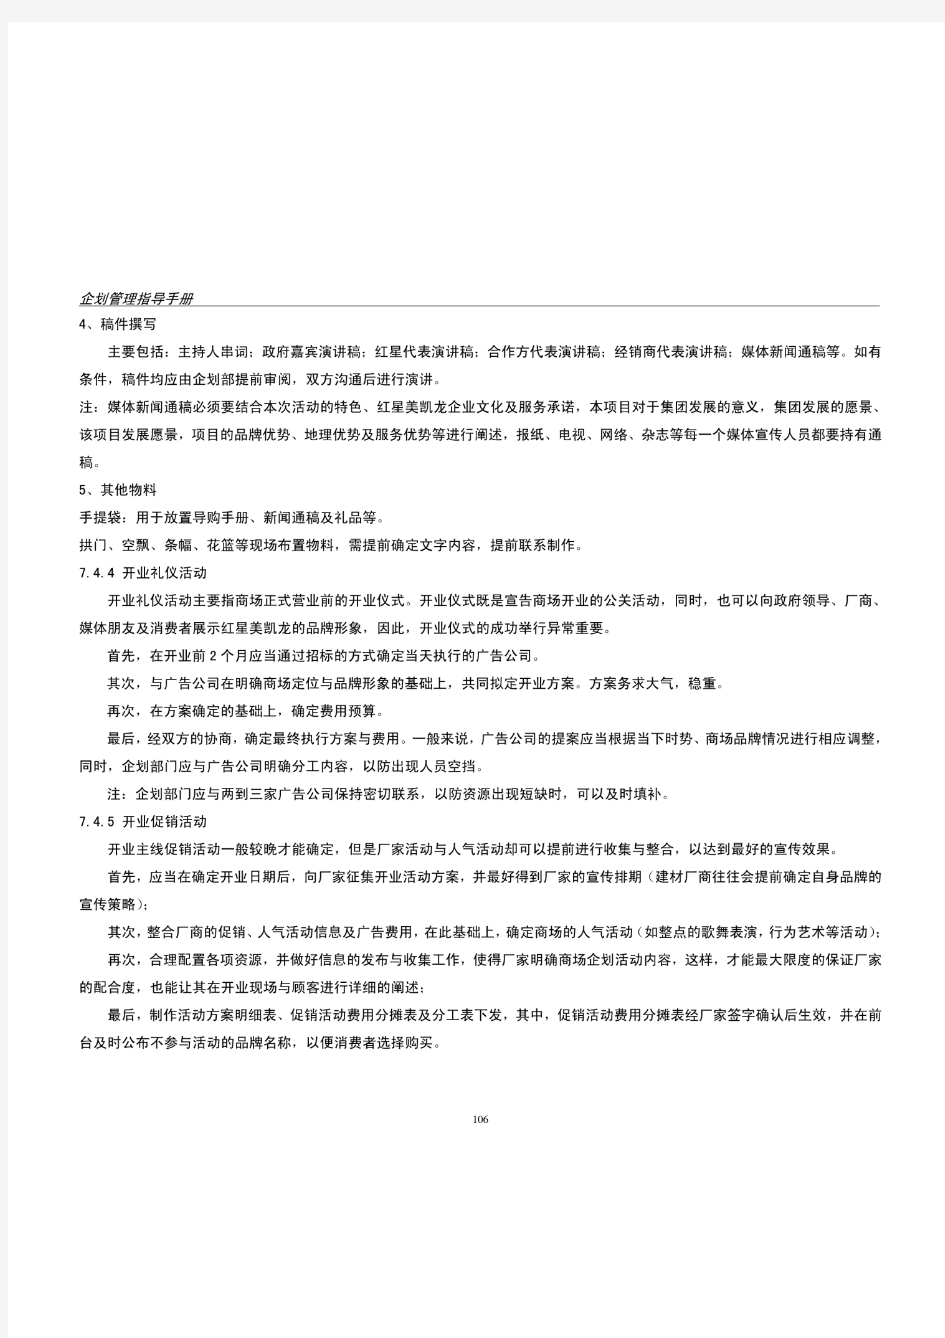 红星美凯龙2012企划管理指导手册(1)